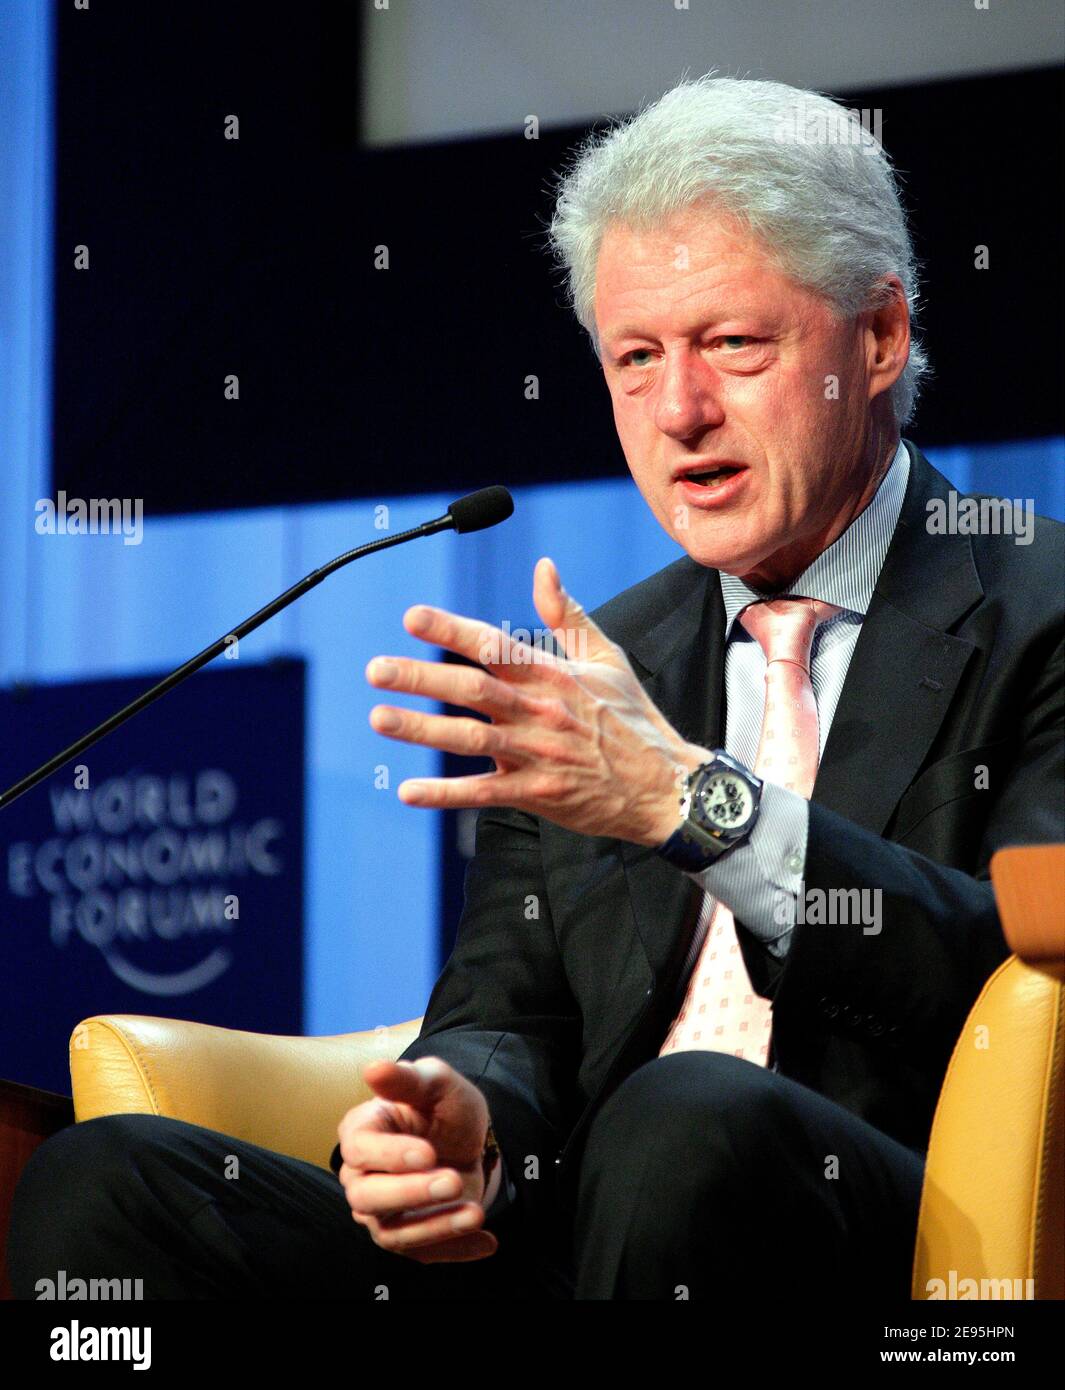 'William J. Clinton, Fundador de la Fundación William Jefferson Clinton; Presidente de los Estados Unidos (1993-2001), captó durante la sesión 'UNA conversación con' en la Reunión Anual 2006 del Foro Económico Mundial en Davos, Suiza, 28 de enero de 2006. Foto de Remy Steinegger/WEF/ABACAPRESS.COM' Foto de stock